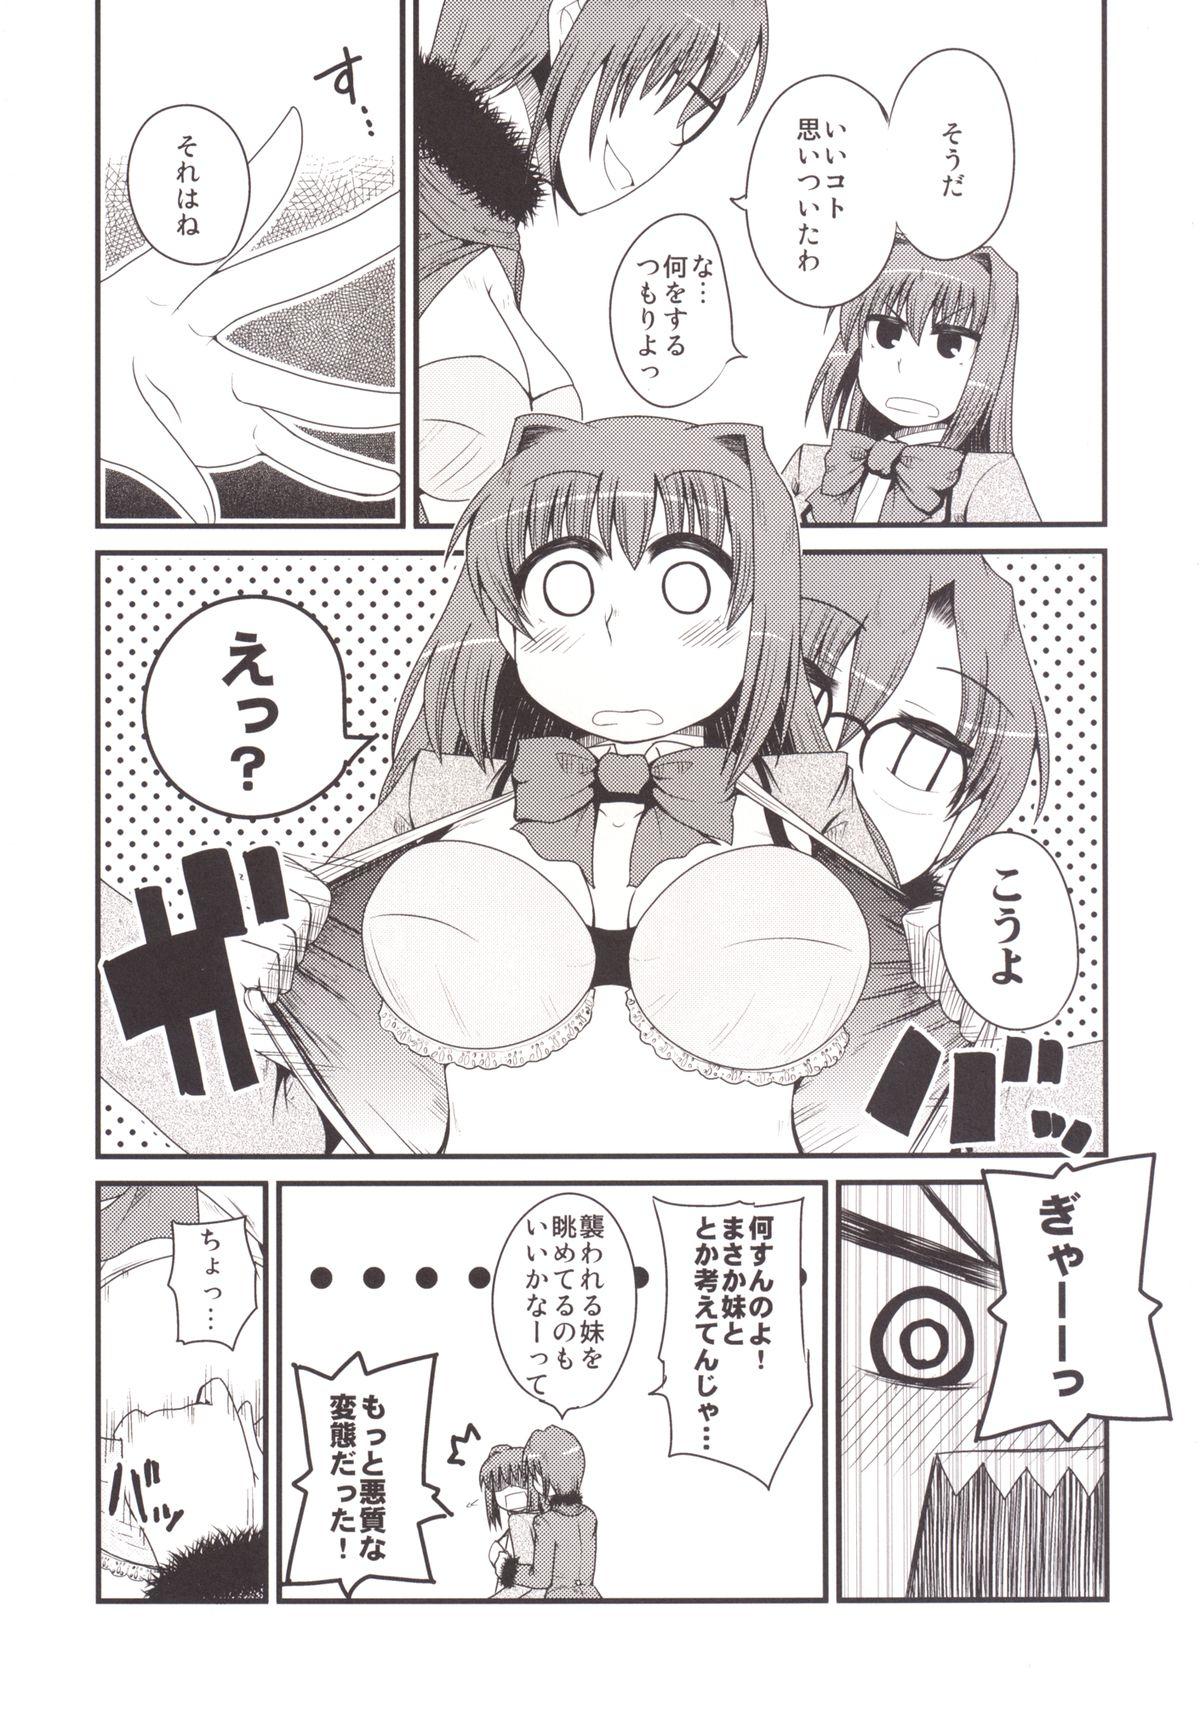 Milfs Ittsu Main 2 - Mahou tsukai no yoru Teenage Porn - Page 9